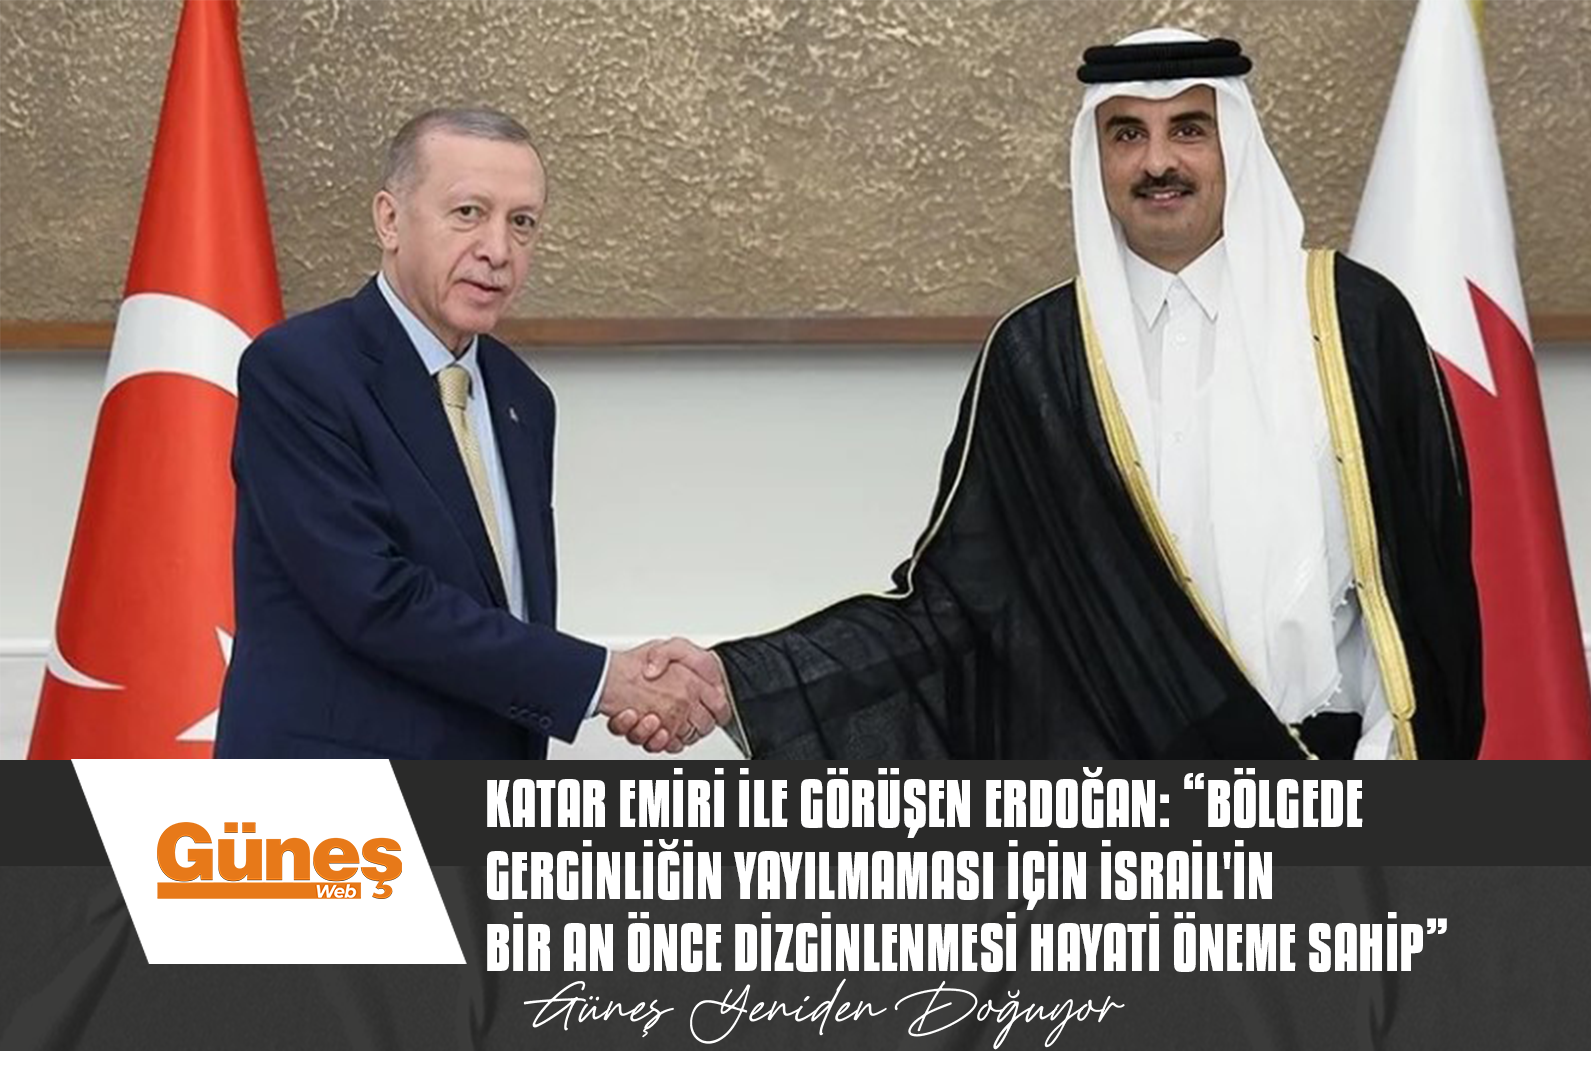 Katar Emiri ile görüşen Erdoğan: “Bölgede gerginliğin yayılmaması için İsrail’in bir an önce dizginlenmesi hayati öneme sahip”